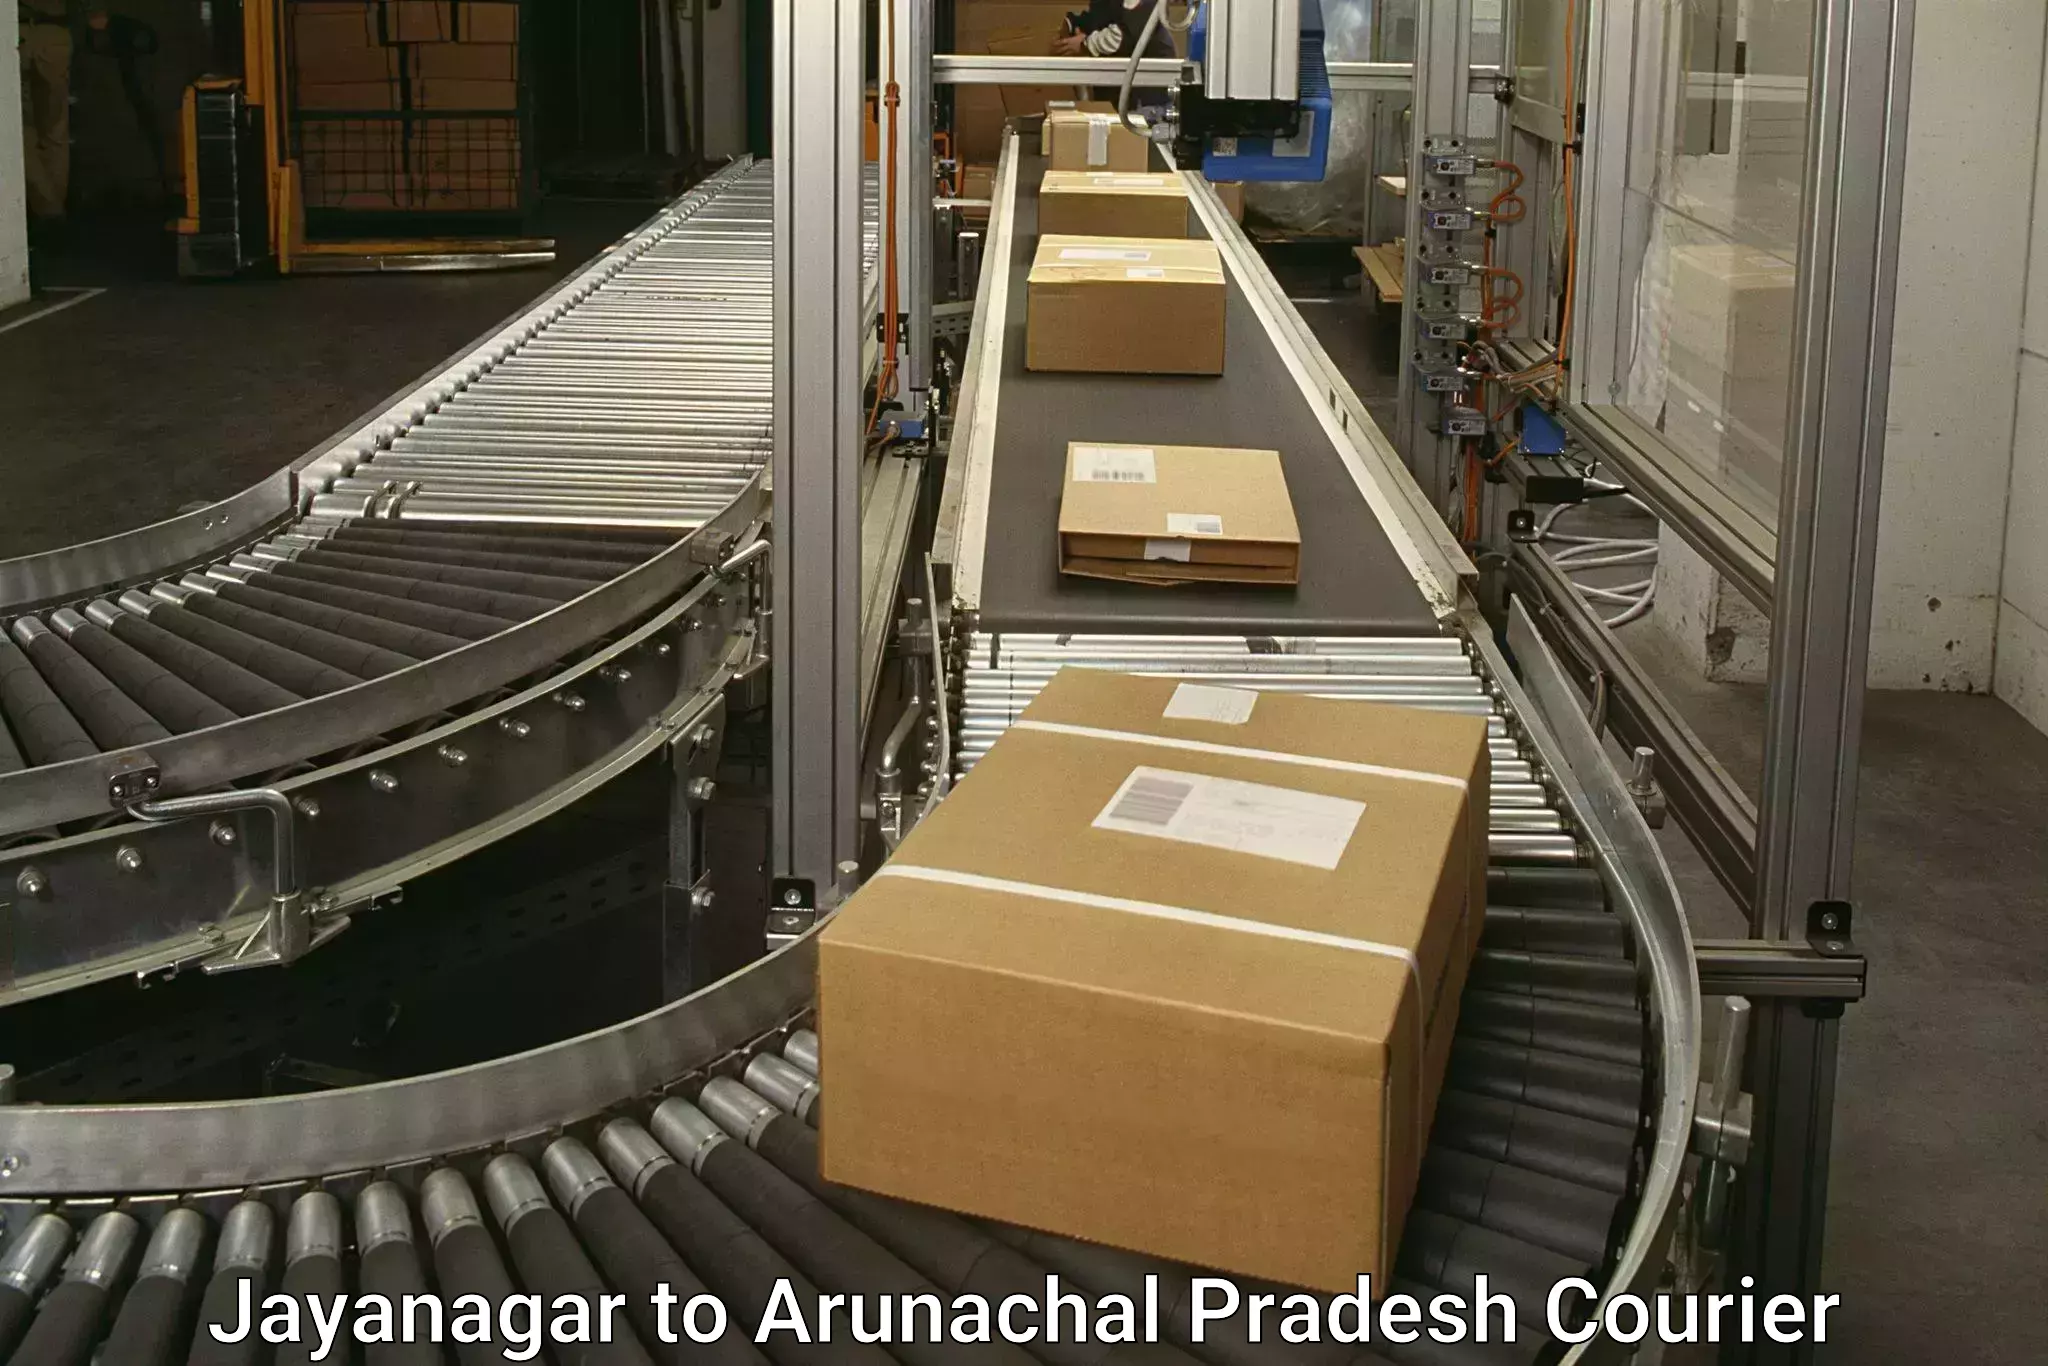 Express package services Jayanagar to Arunachal Pradesh